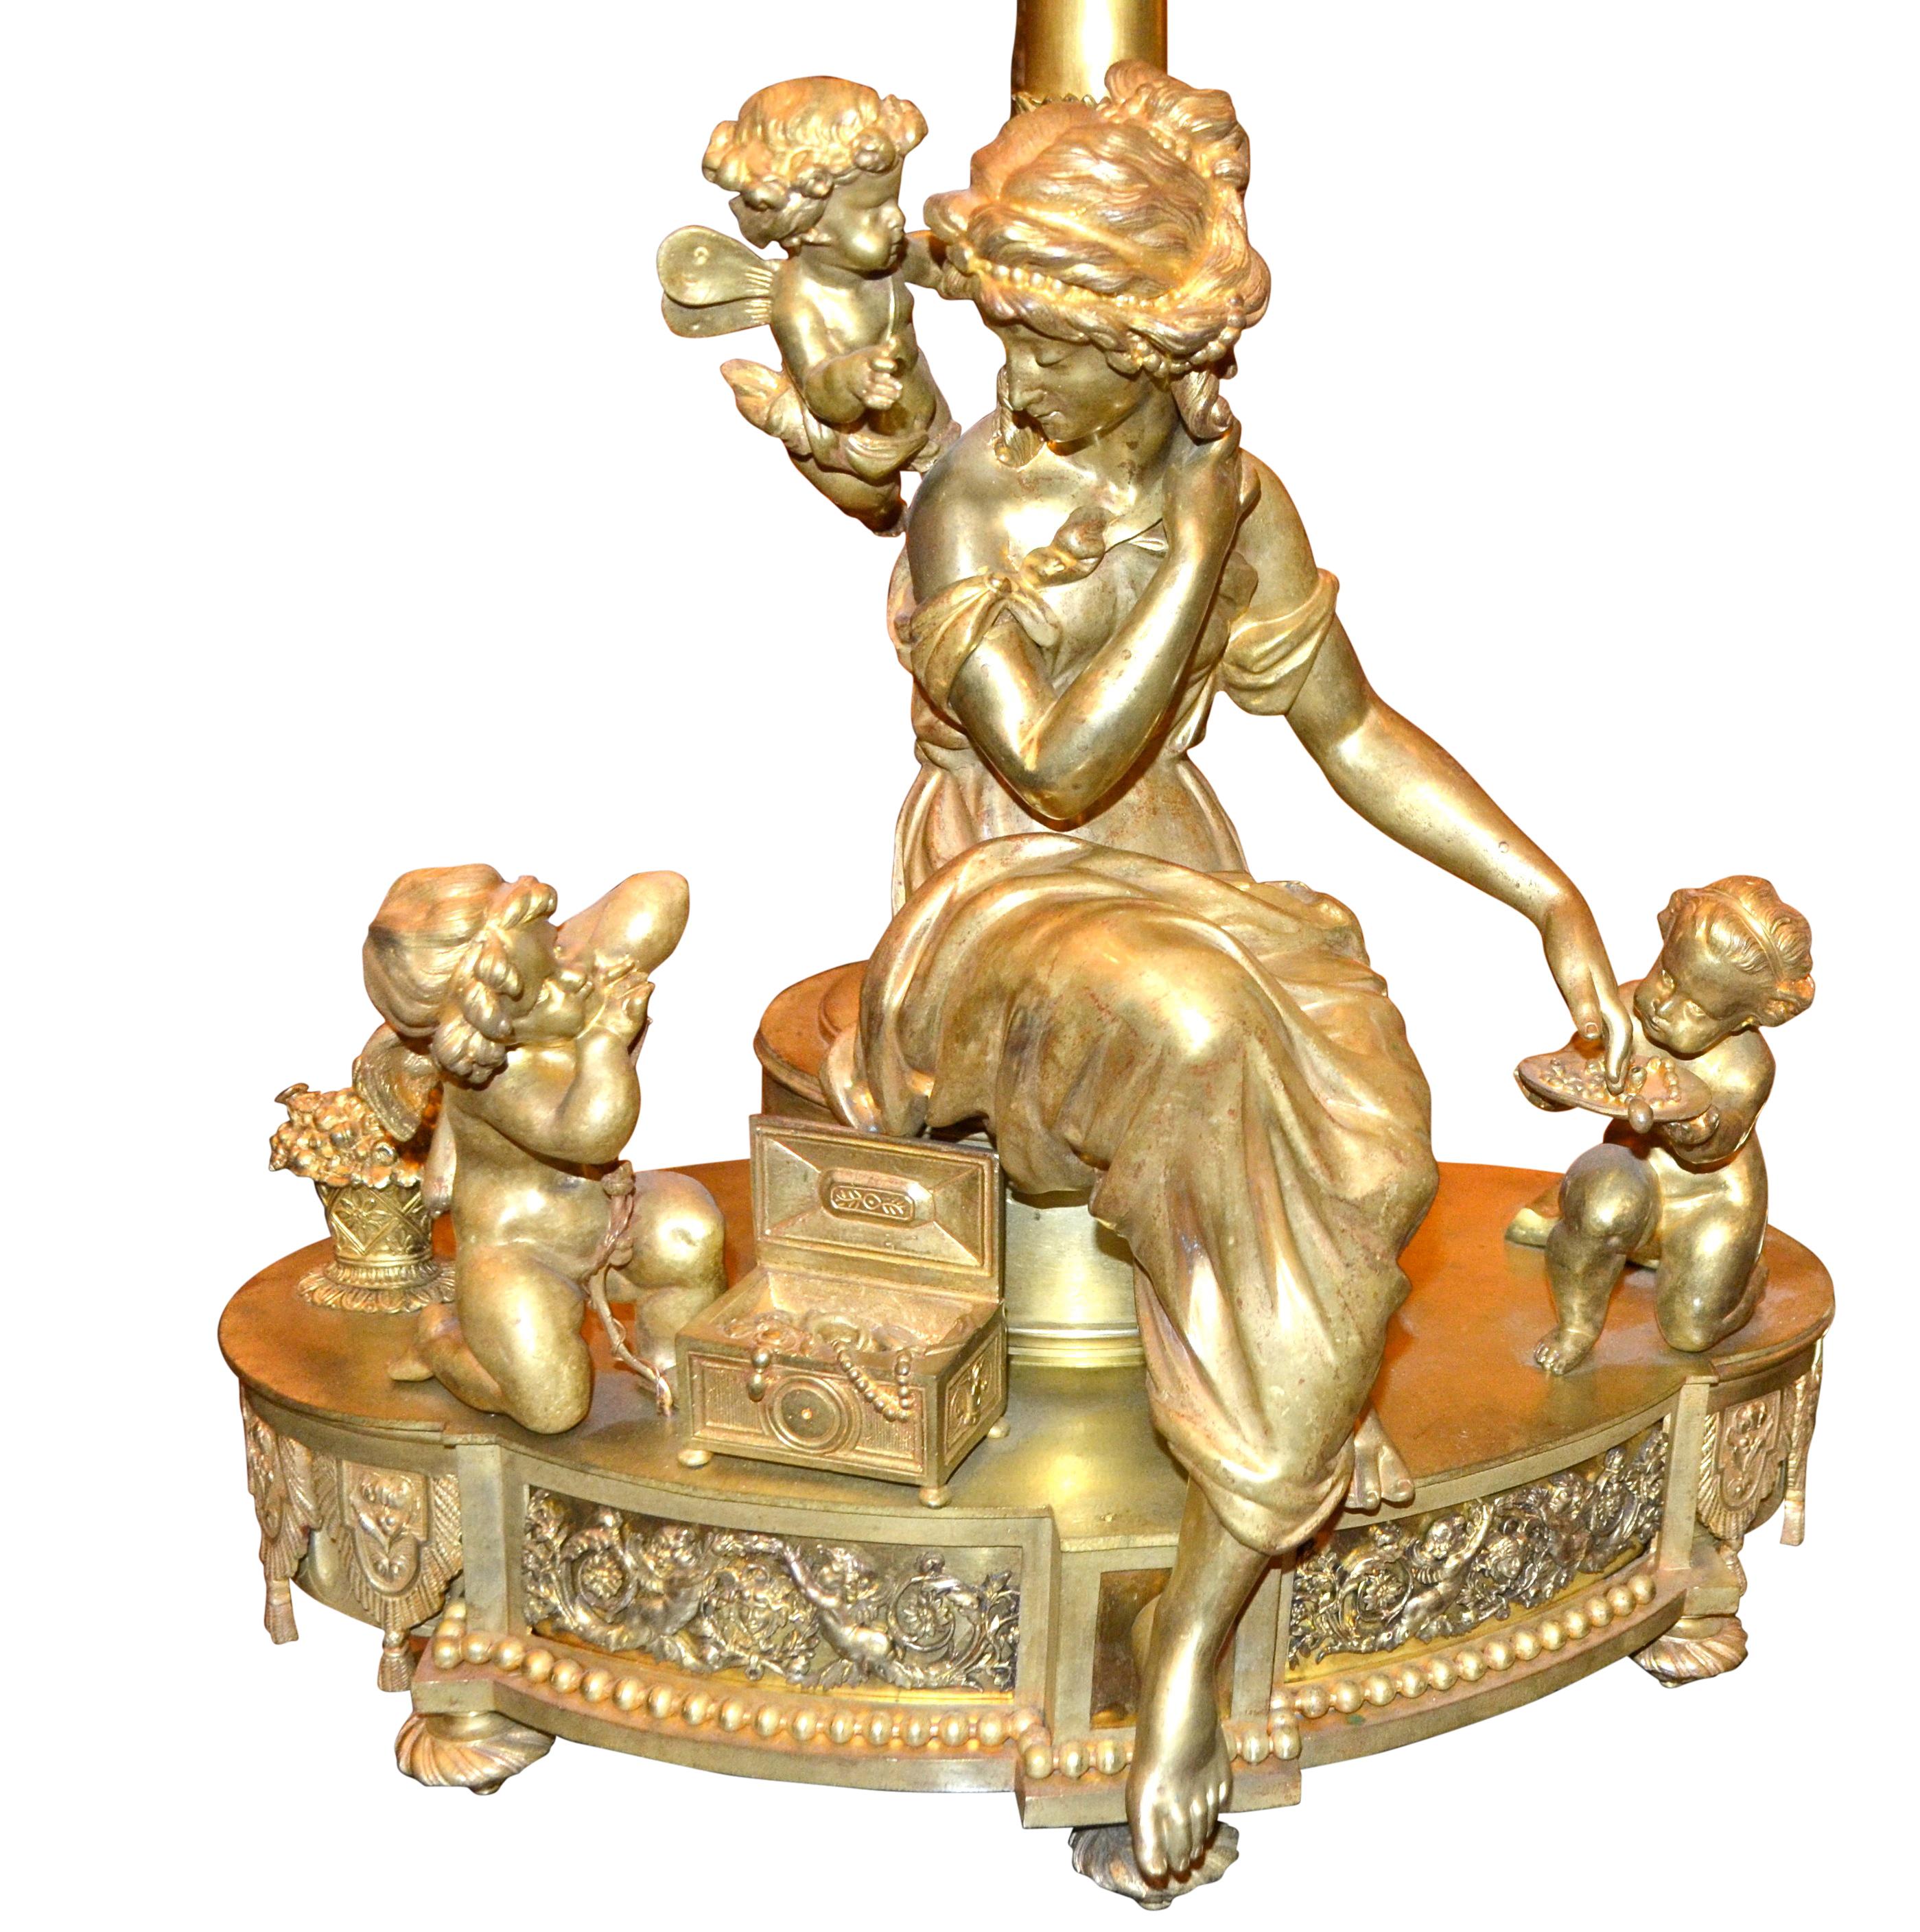 Ein ungewöhnlicher französischer Kandelaber aus vergoldeter Bronze, der jetzt als Lampe verkabelt ist und die Stile Louis XVI und des späten Empire miteinander verbindet. Eine elegant drapierte junge Dame sitzt neben ihrem geöffneten